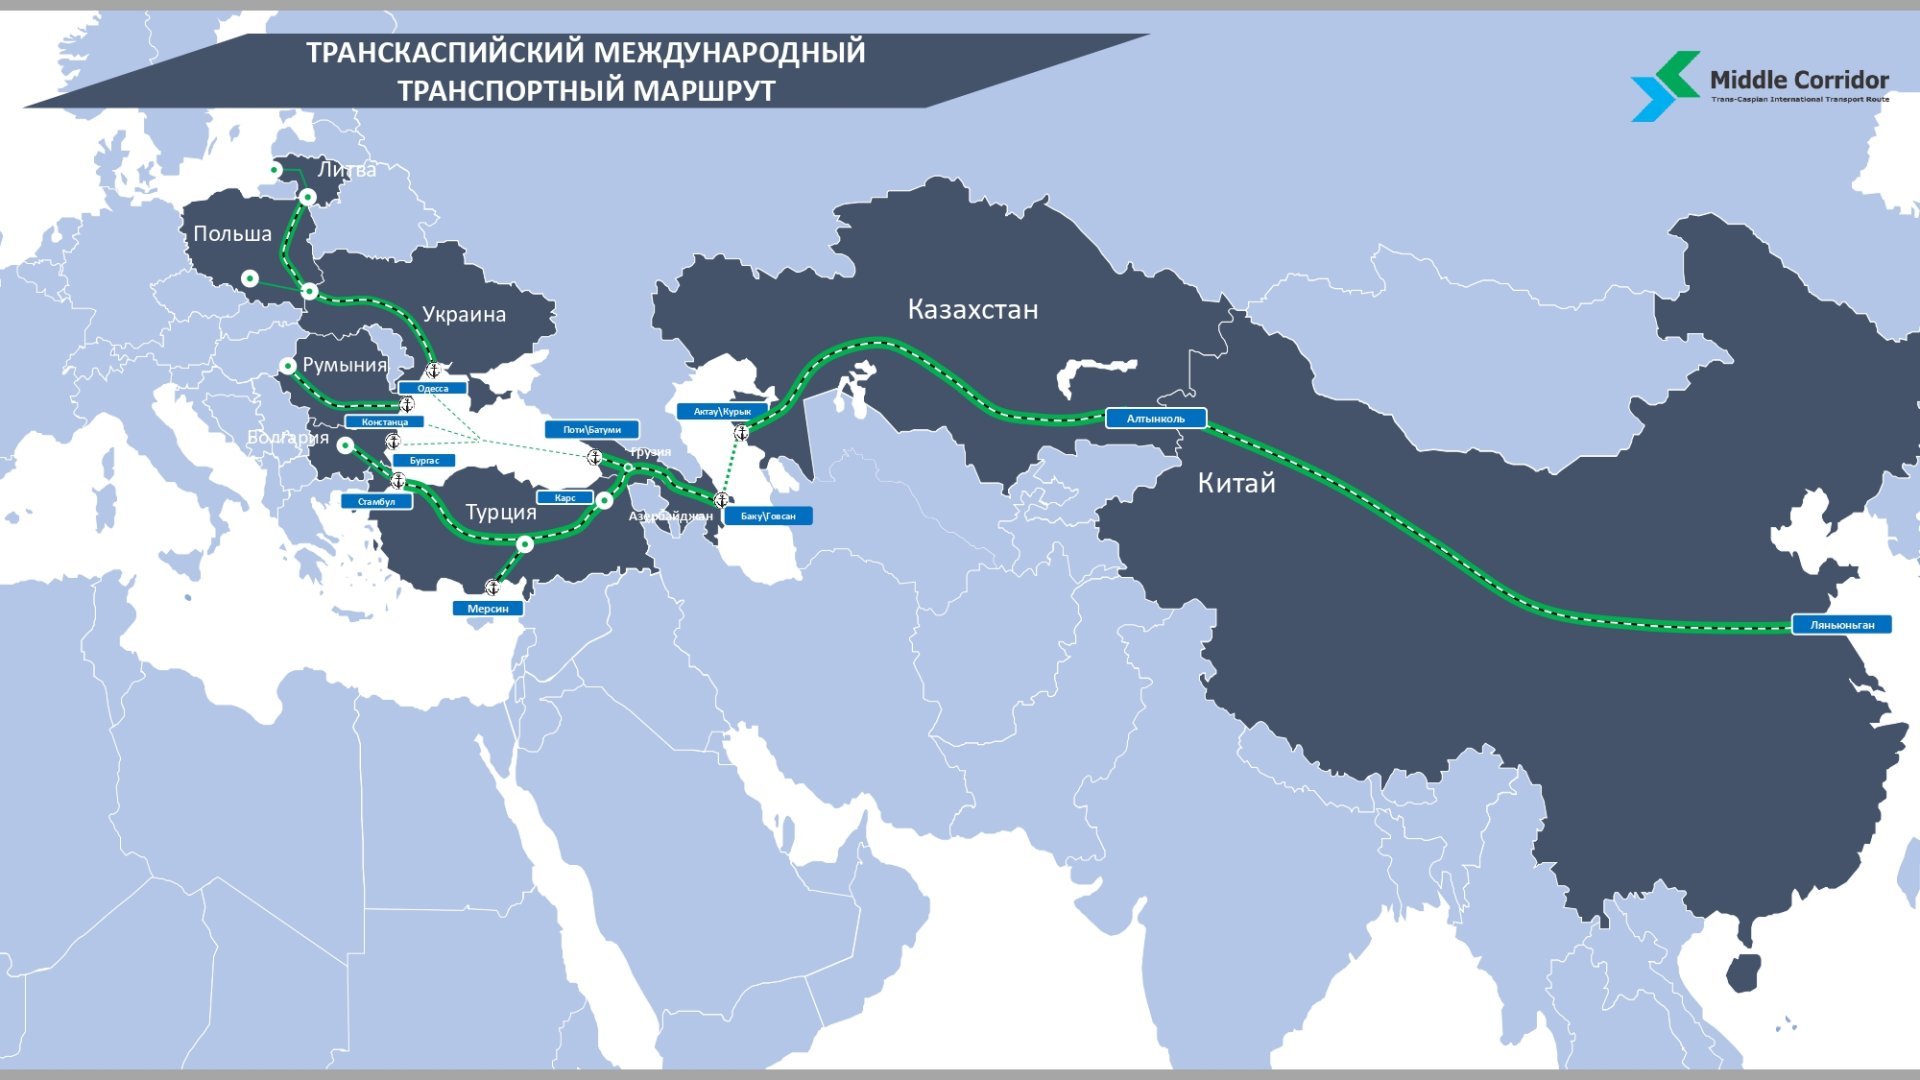 Мир на Южном Кавказе обеспечит бесперебойное функционирование Среднего коридора - Тойво Клаар